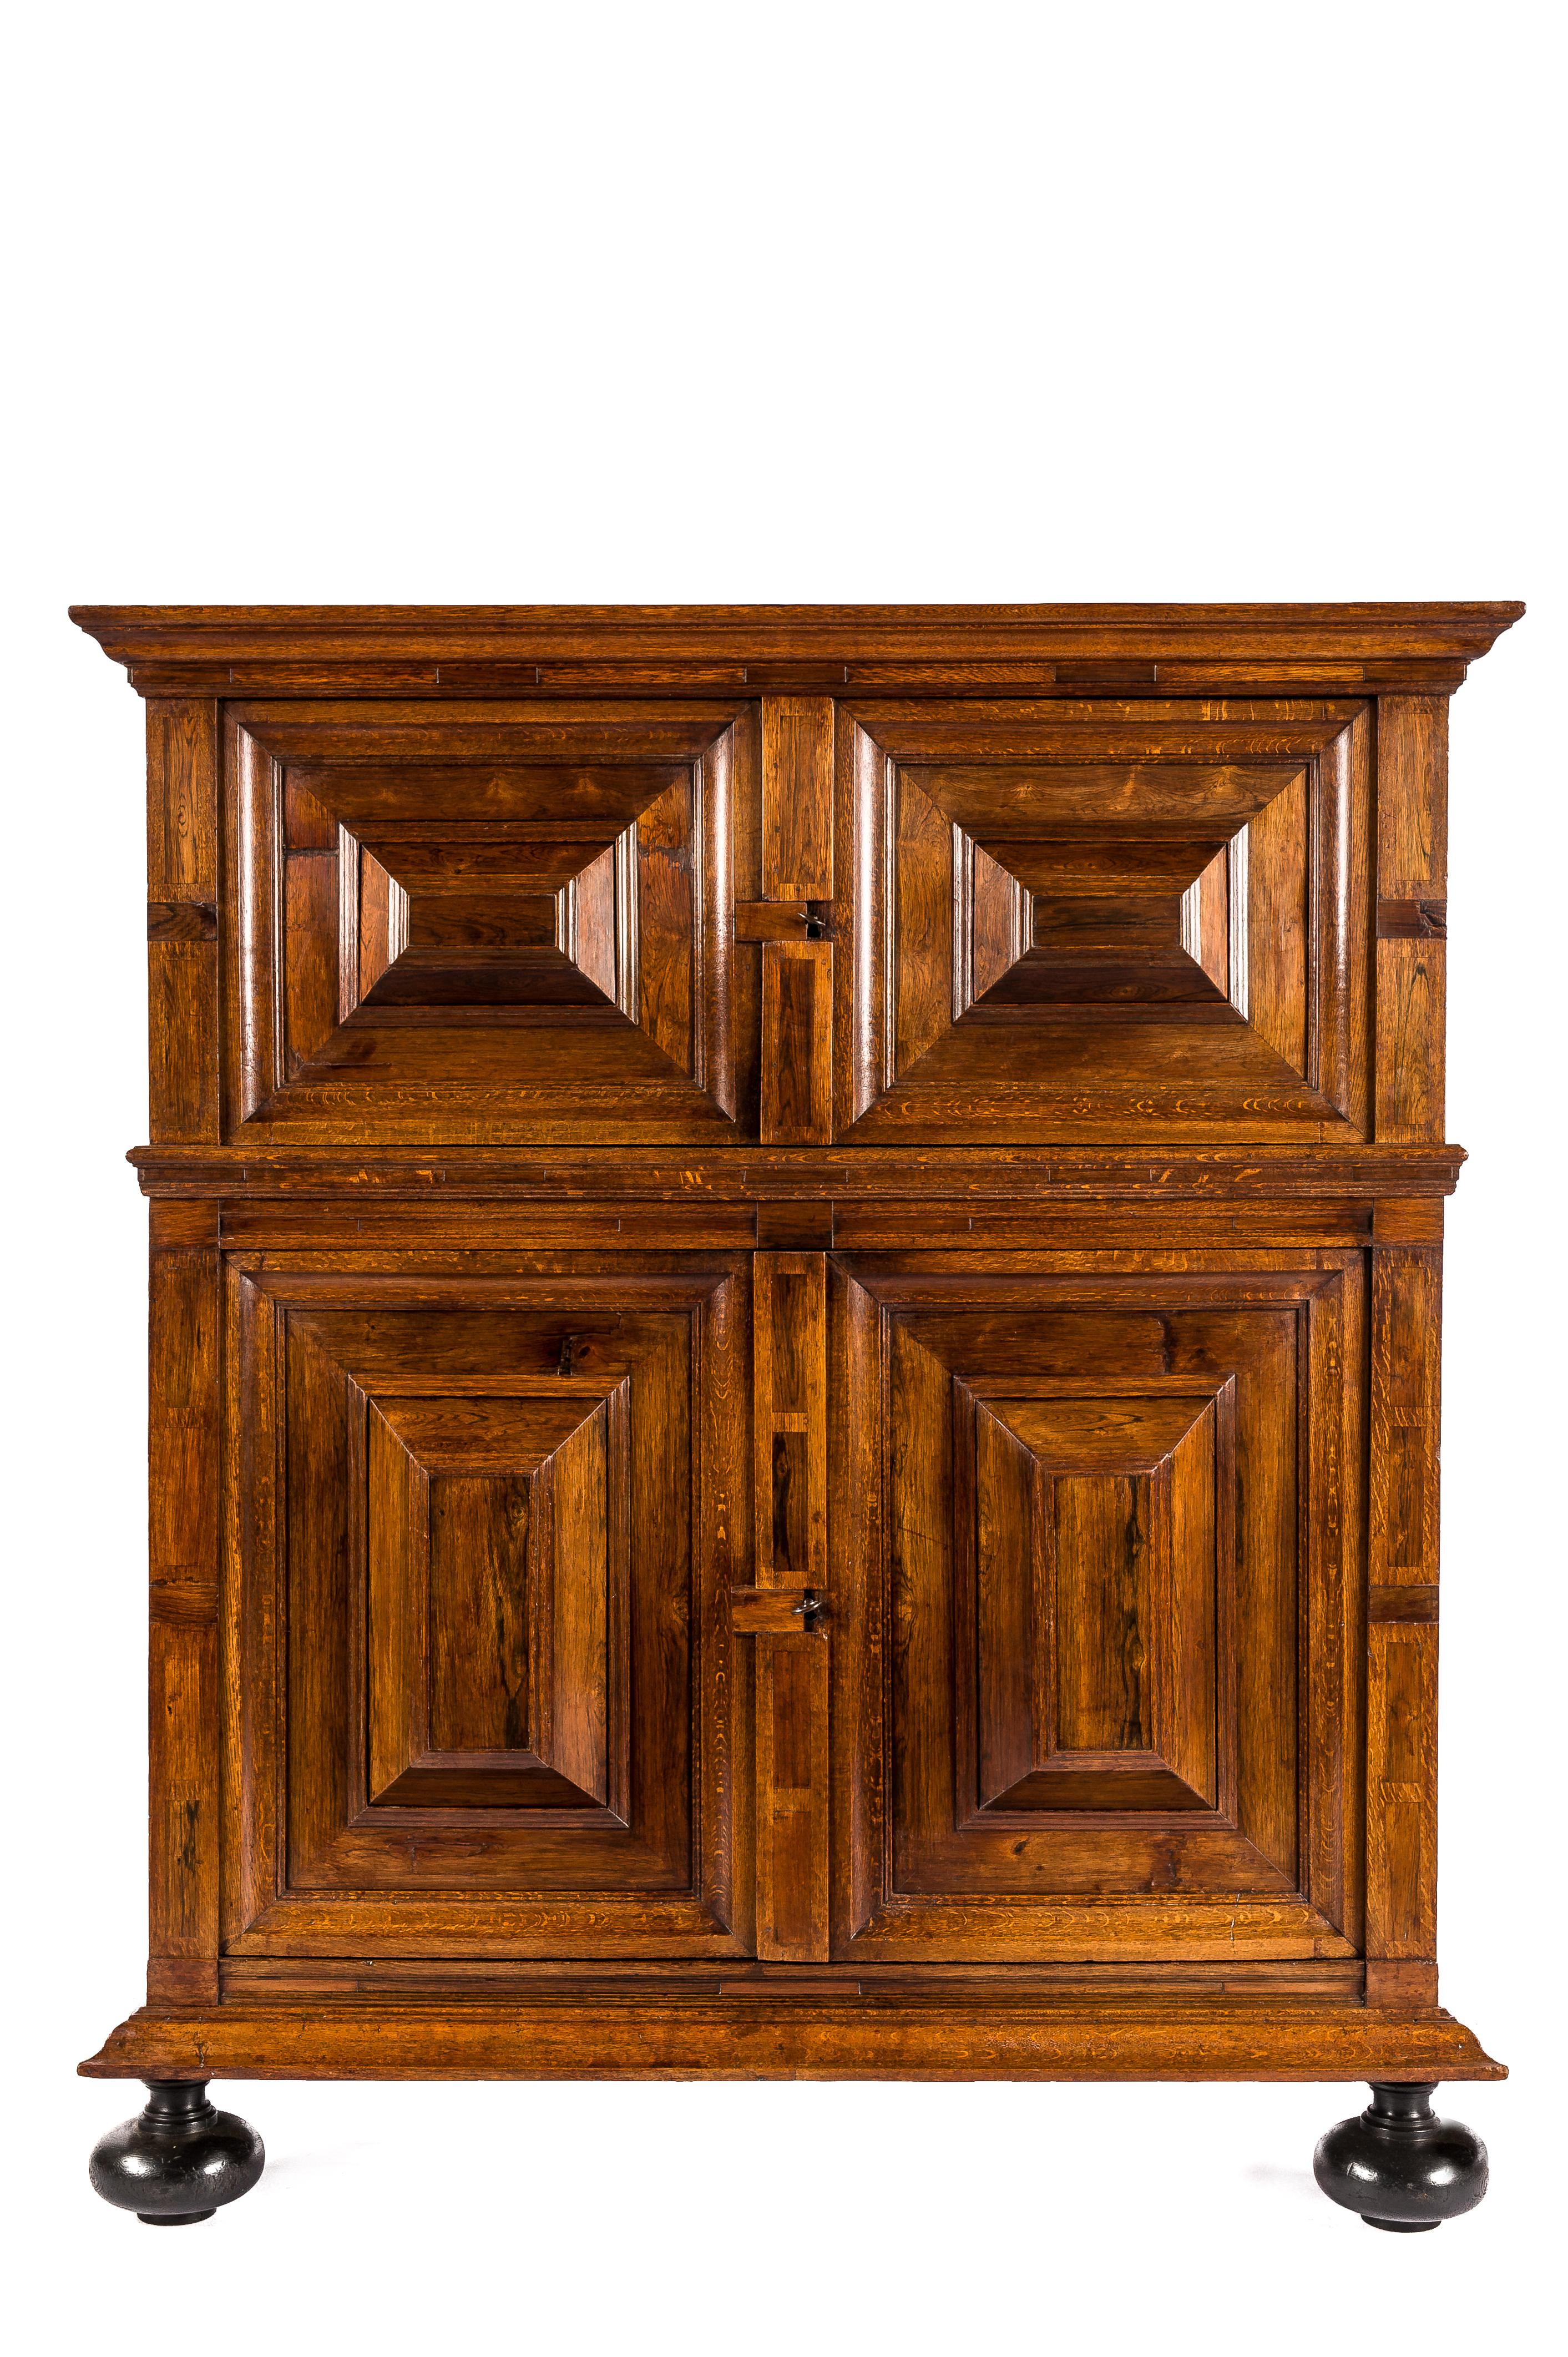 Magnifique armoire Renaissance à quatre portes du début du XVIIIe siècle, en chêne massif et placage de noyer de la meilleure qualité. L'armoire arbore une chaude couleur miel combinée à un brillant profond et à une riche patine accumulée au fil de